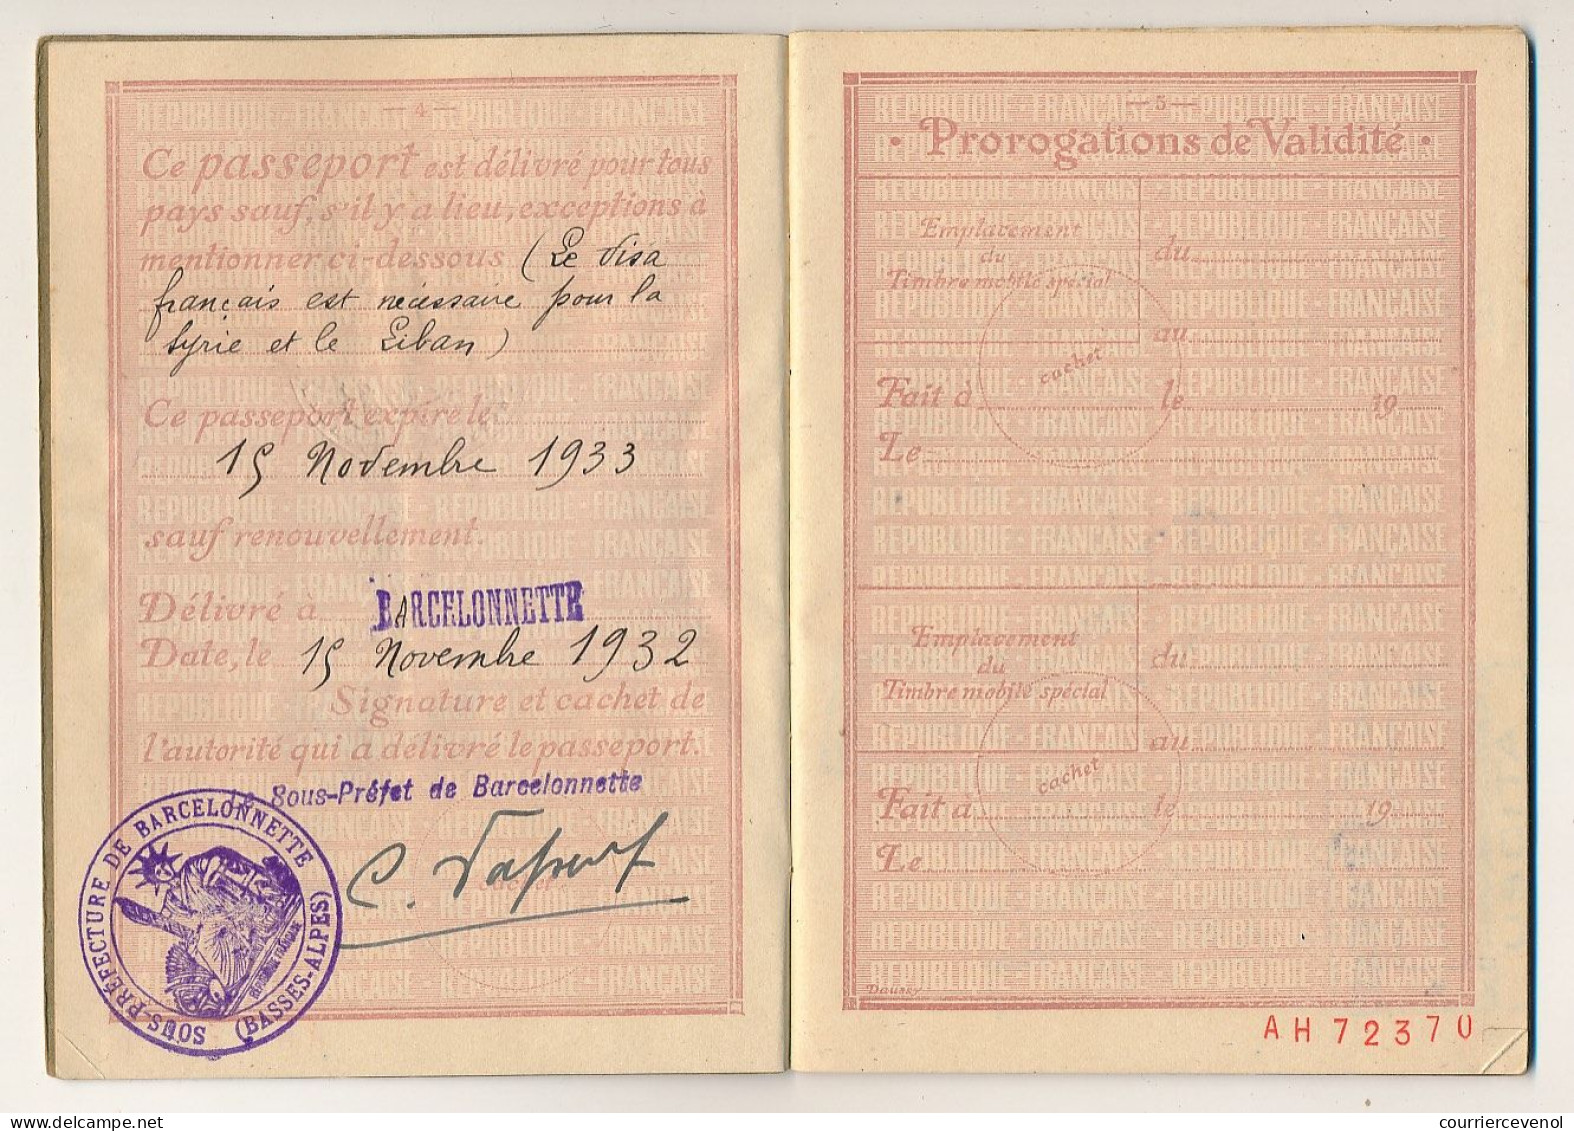 FRANCE - Passeport à l'étranger 20F Barcelonnette (Basses Alpes) 1932 - Photos mère et enfant